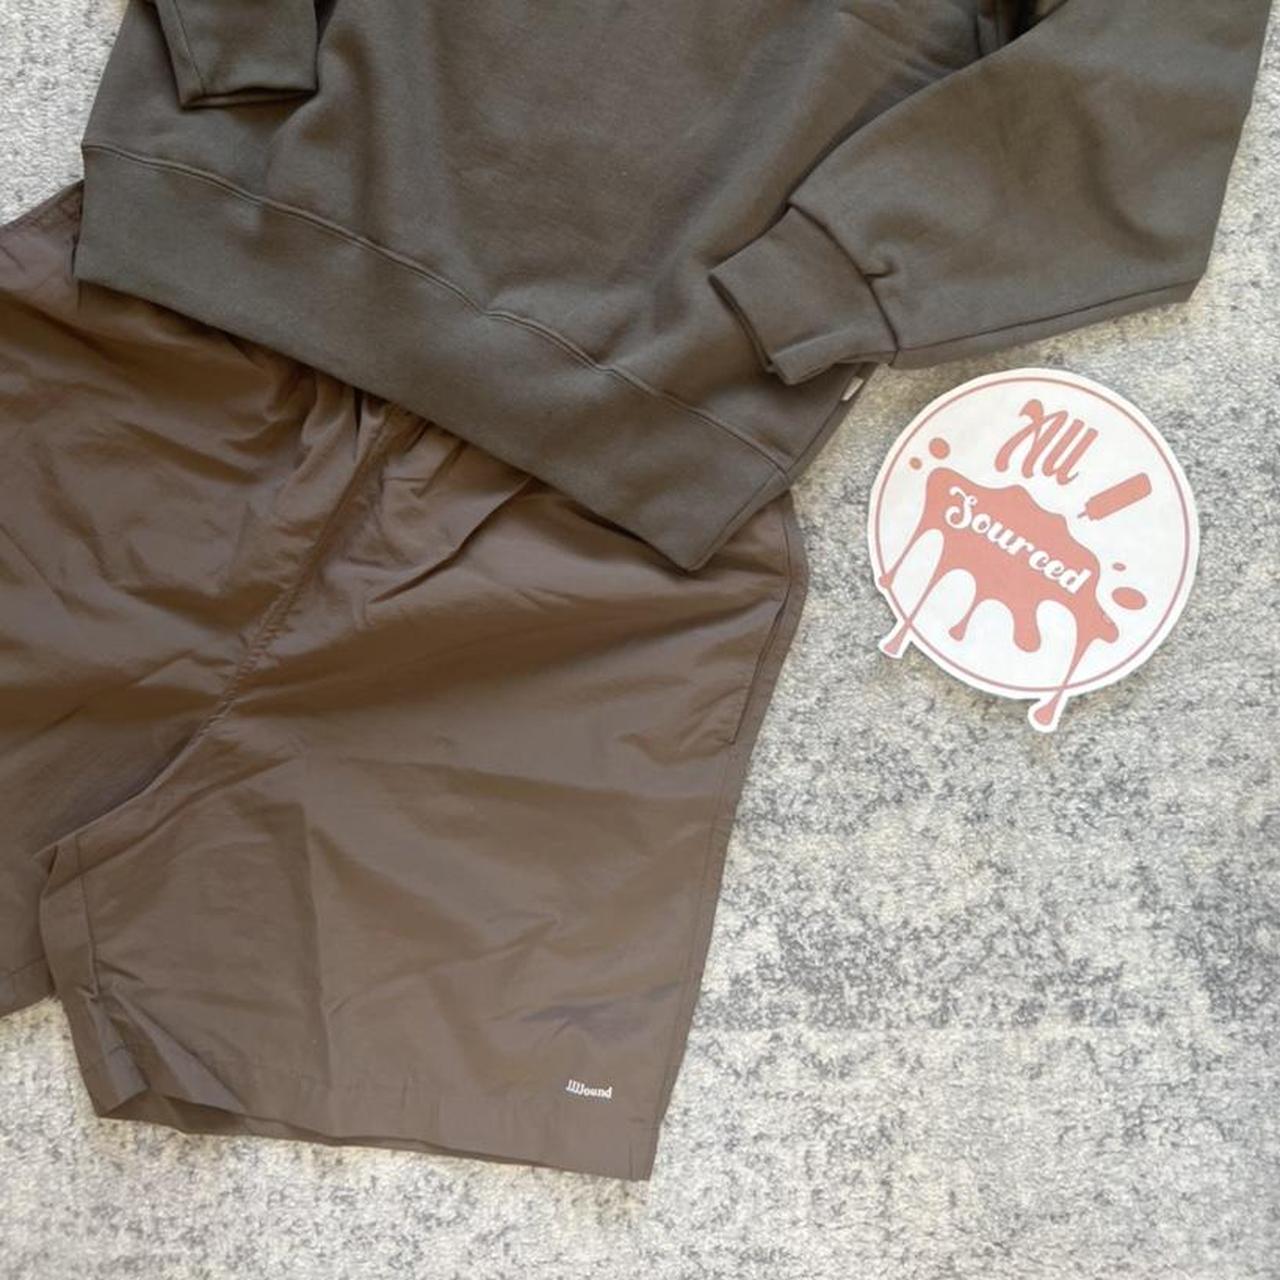 Jjjjound Camper shorts (7 inch), Brown, Size